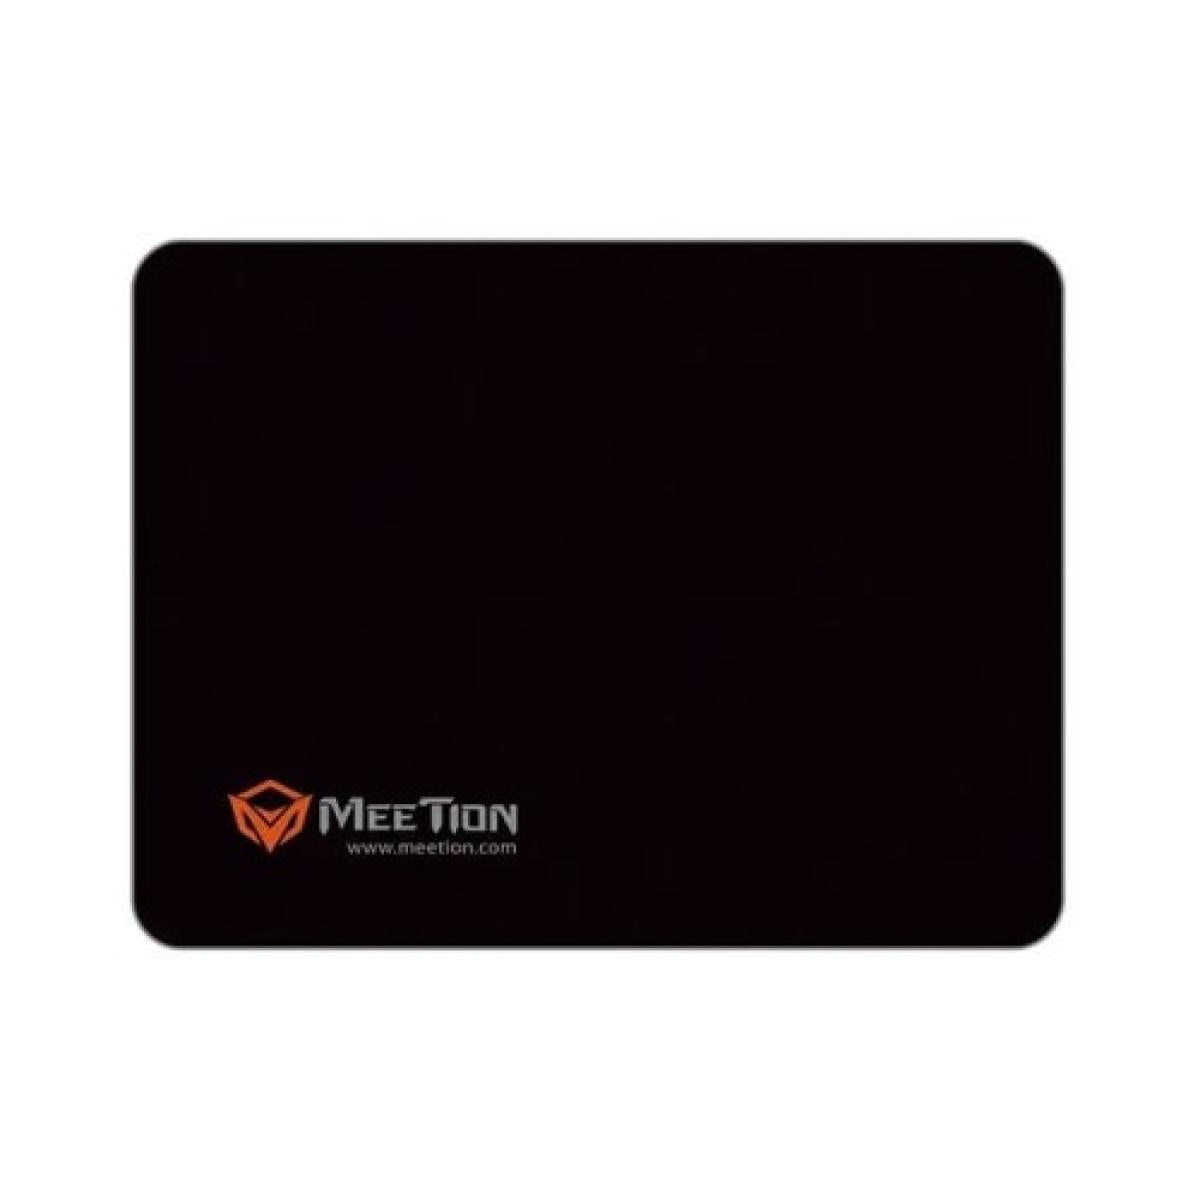 MeeTion Anti Slip Gaming Mousepad Medium Premium Cloth - Black